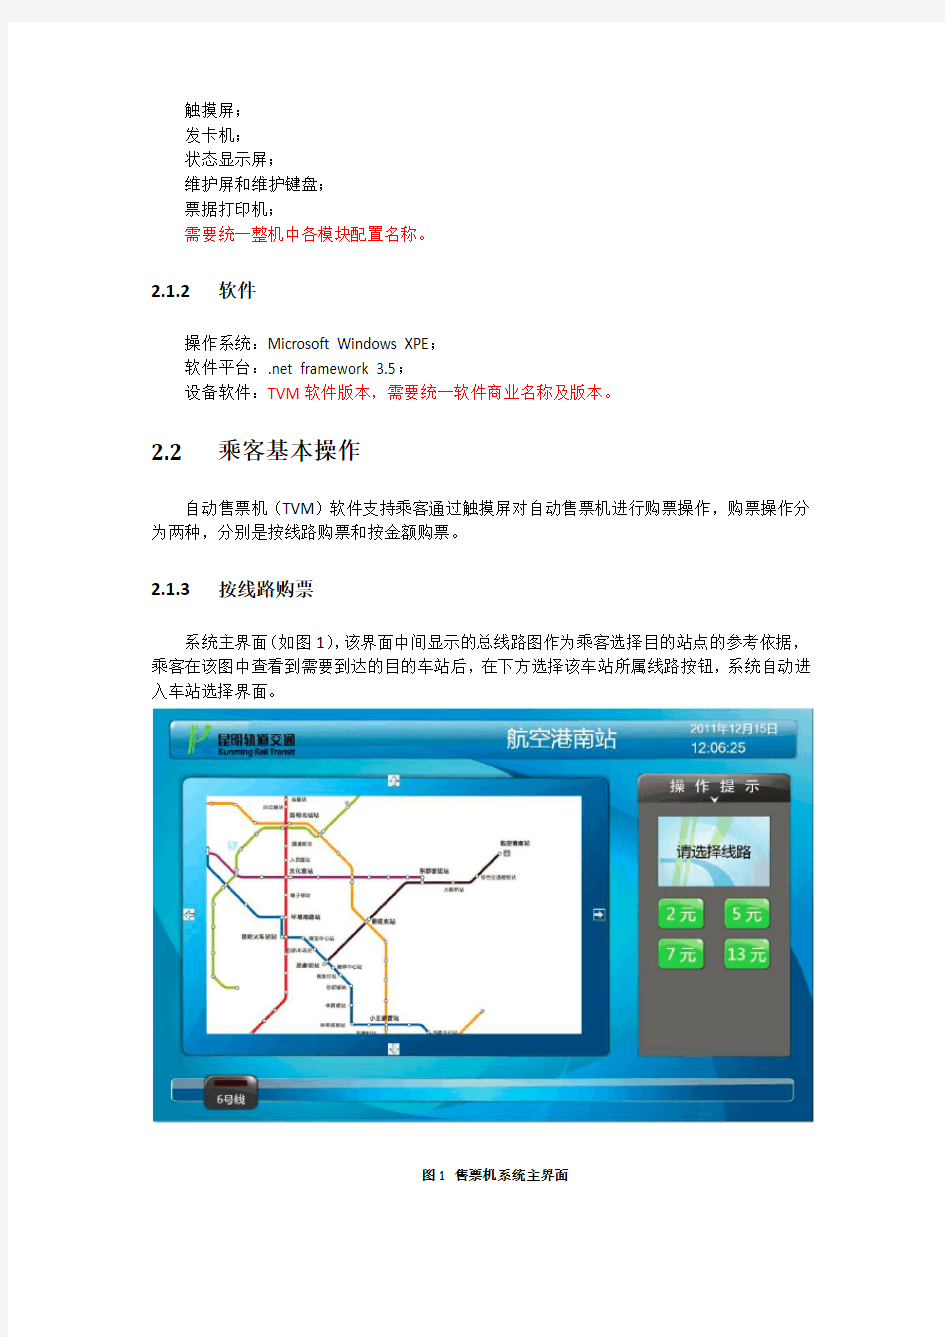 昆明地铁交通6号线自动售检票系统(AFC)自动售票机(TVM)用户手册